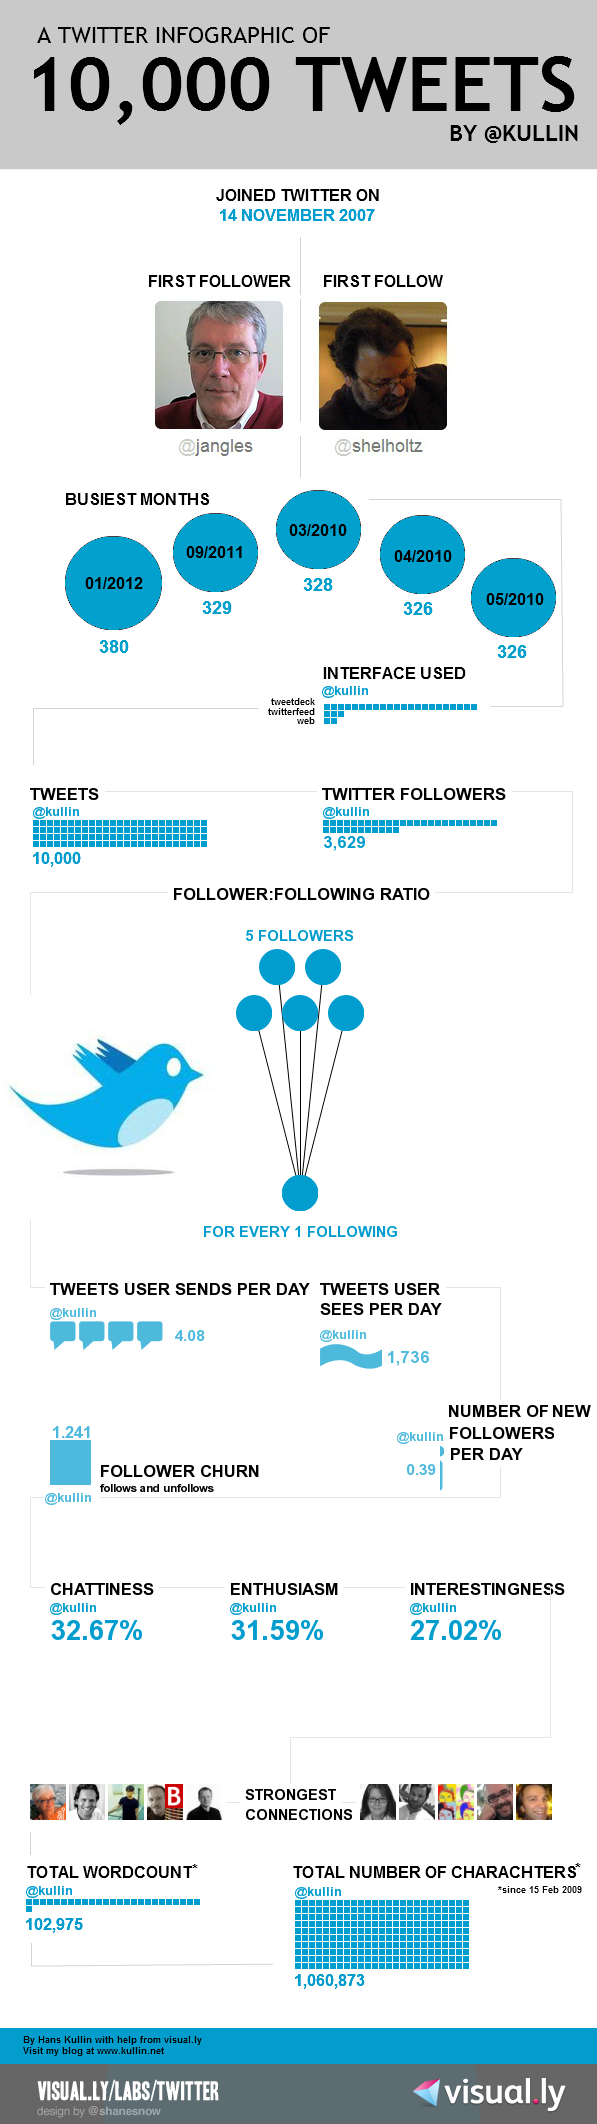 infographic-kullin-10000-tweets